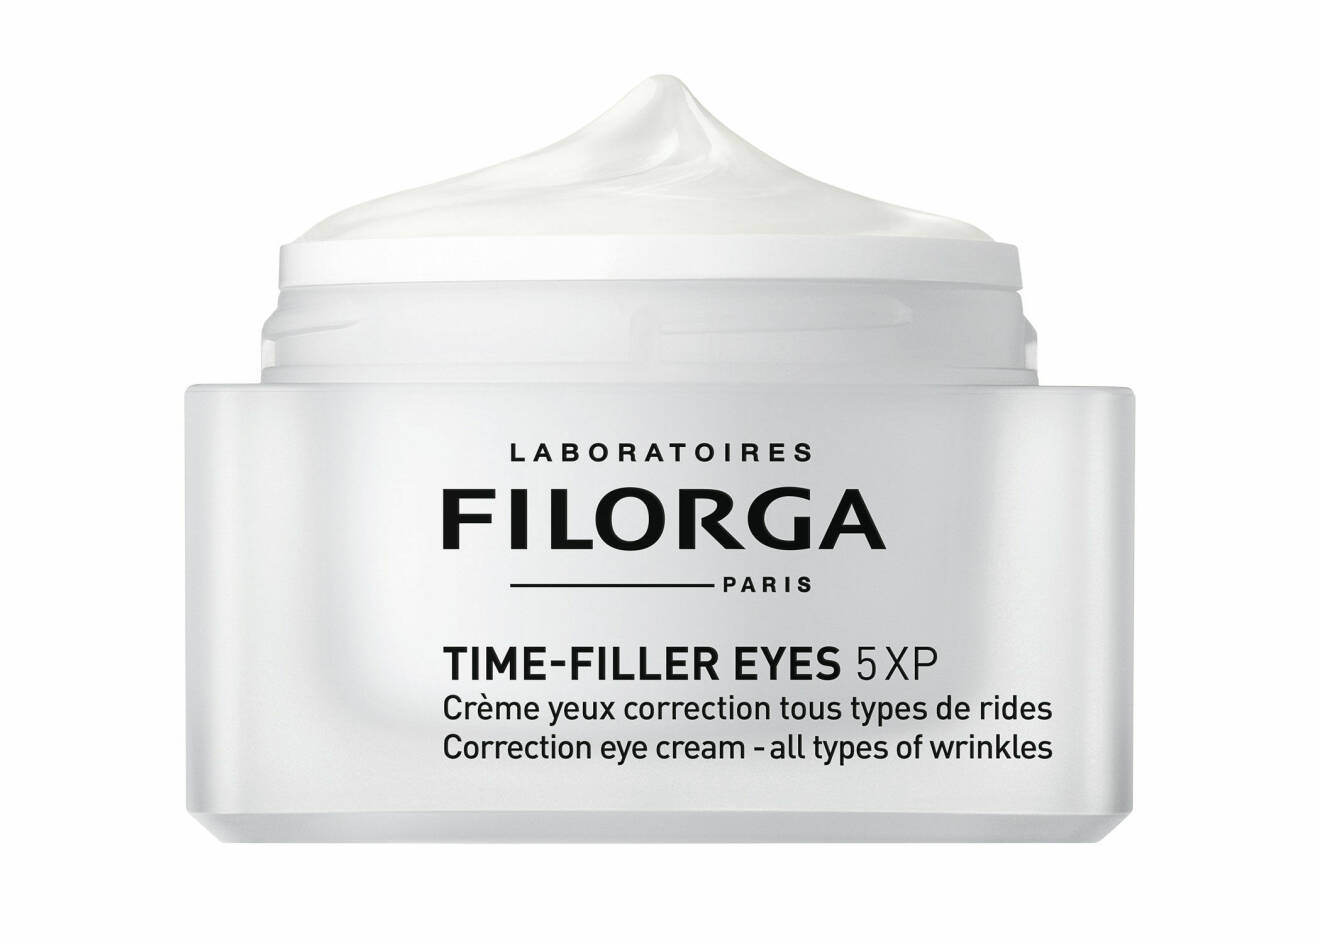 Time Filler Eyes 5XP från Filorga.